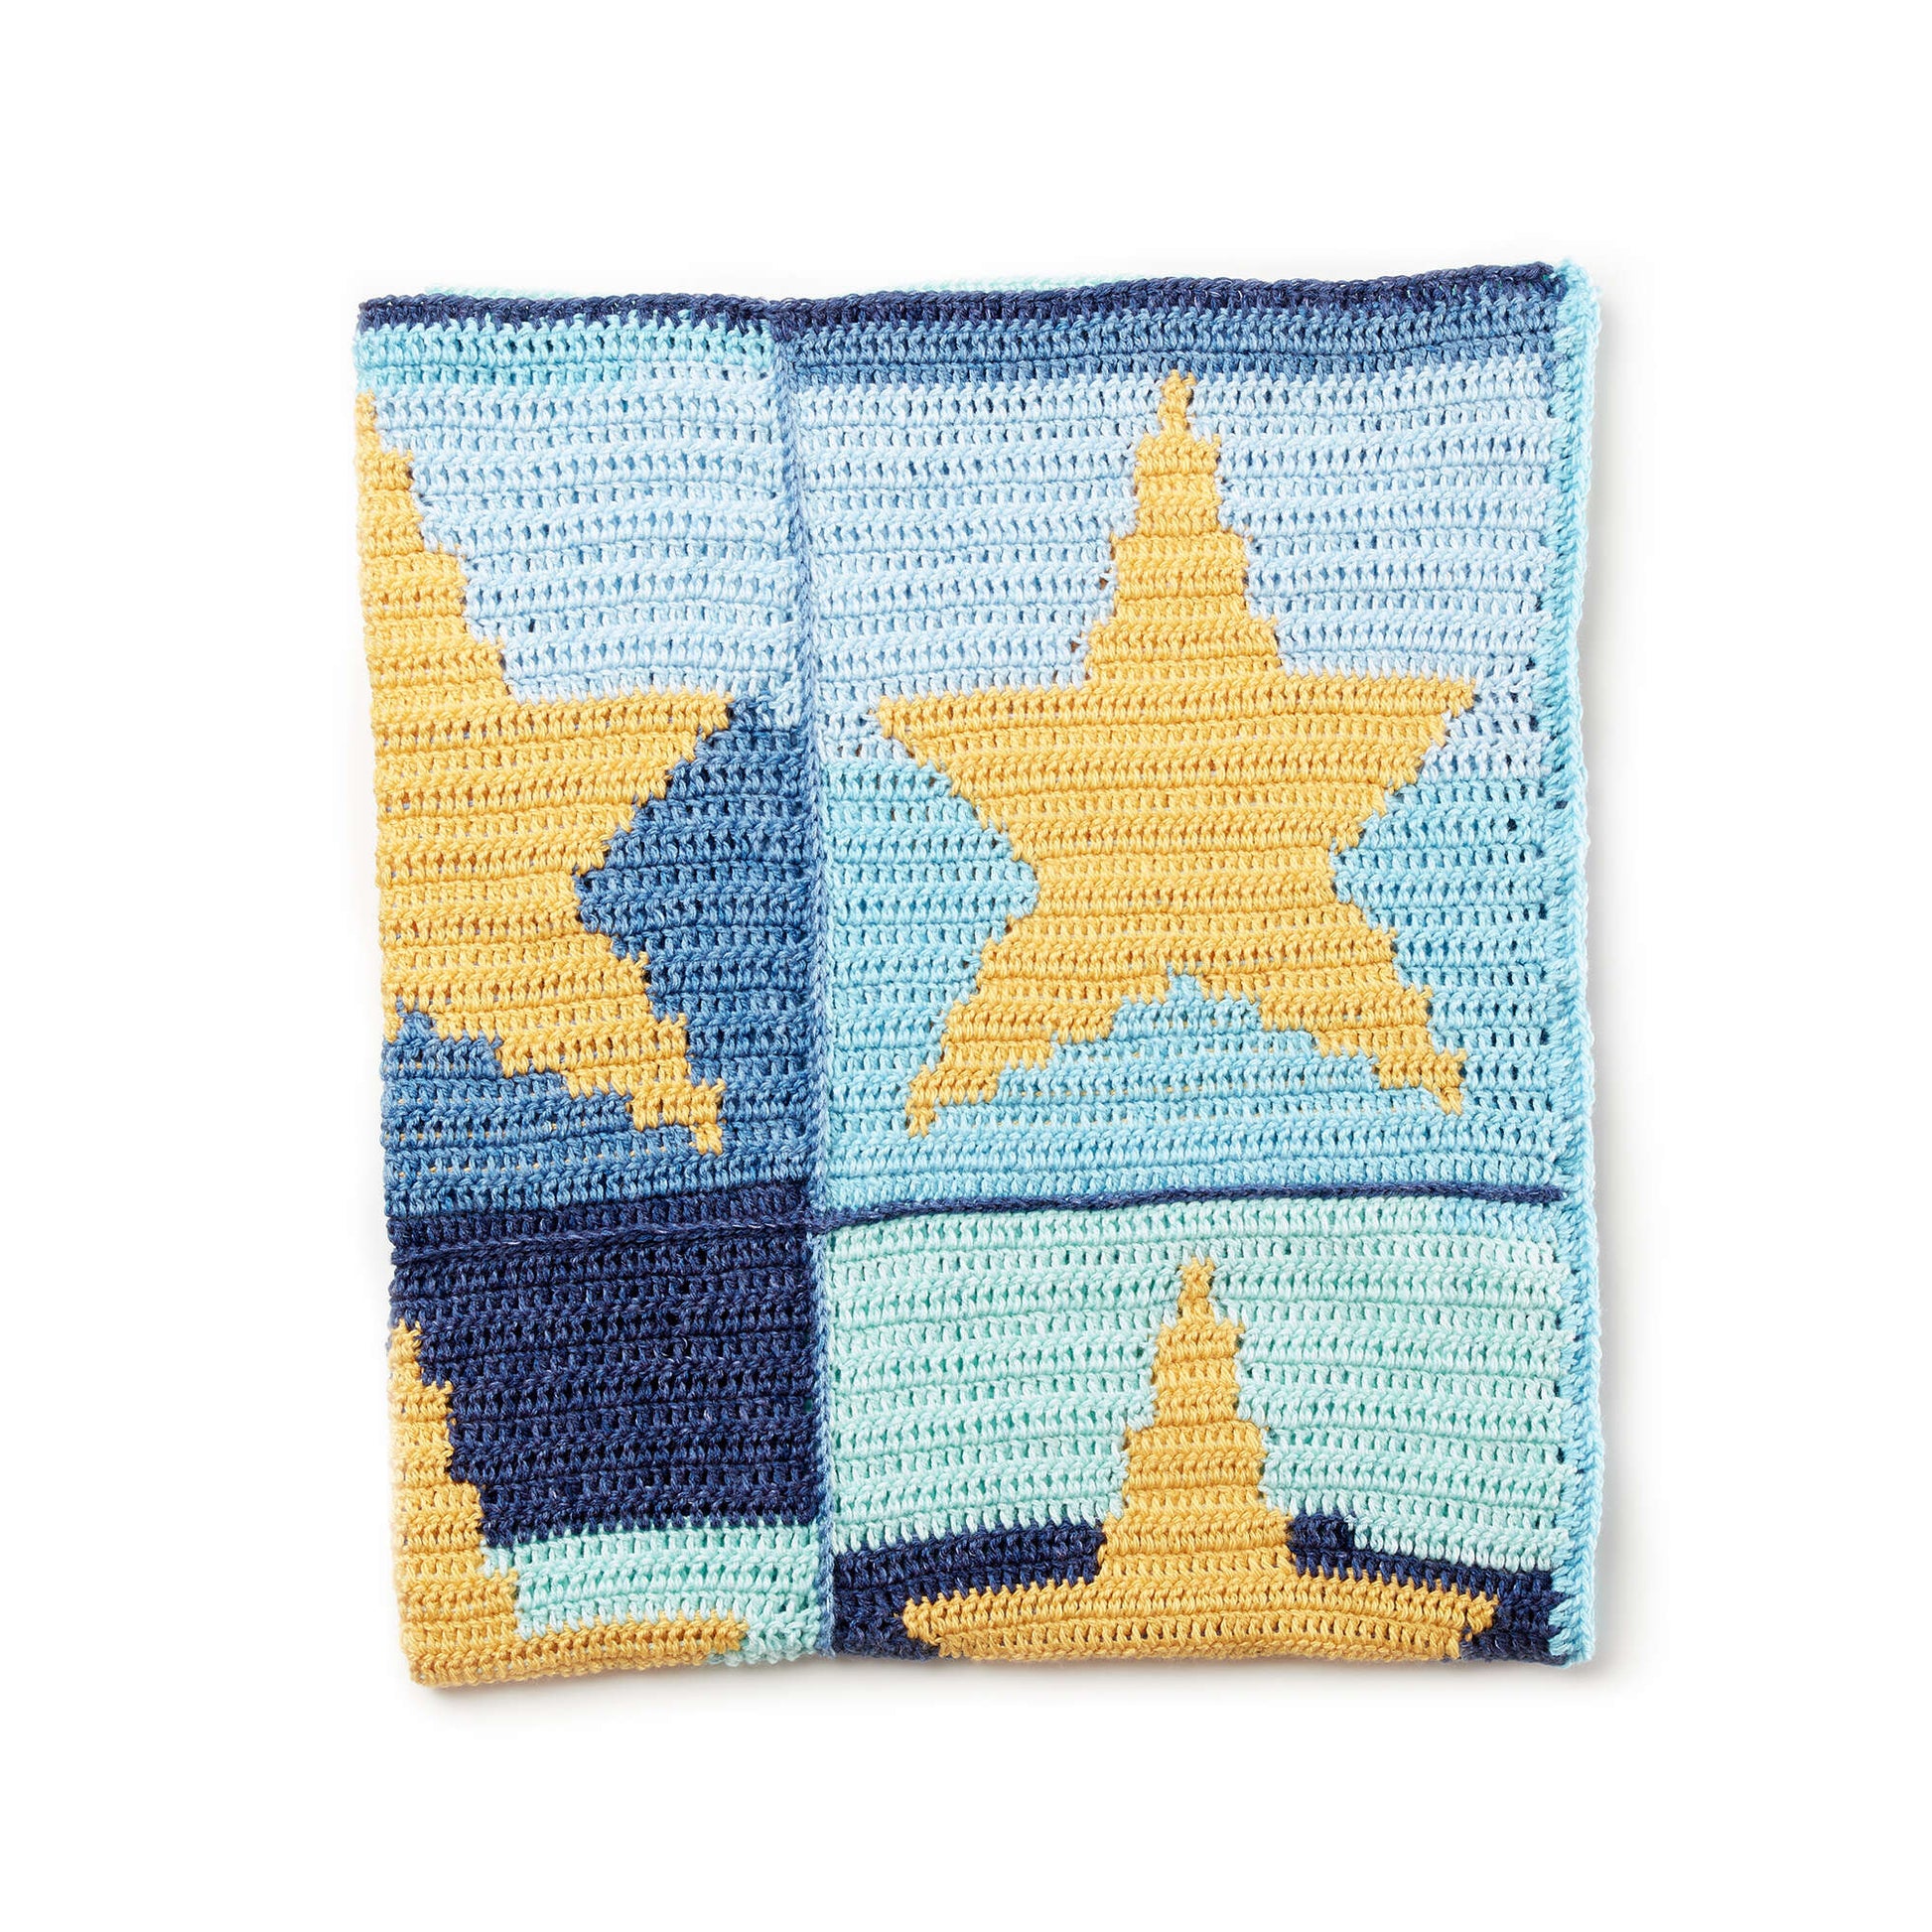 Free Bernat Starry Sky Crochet Blanket Pattern